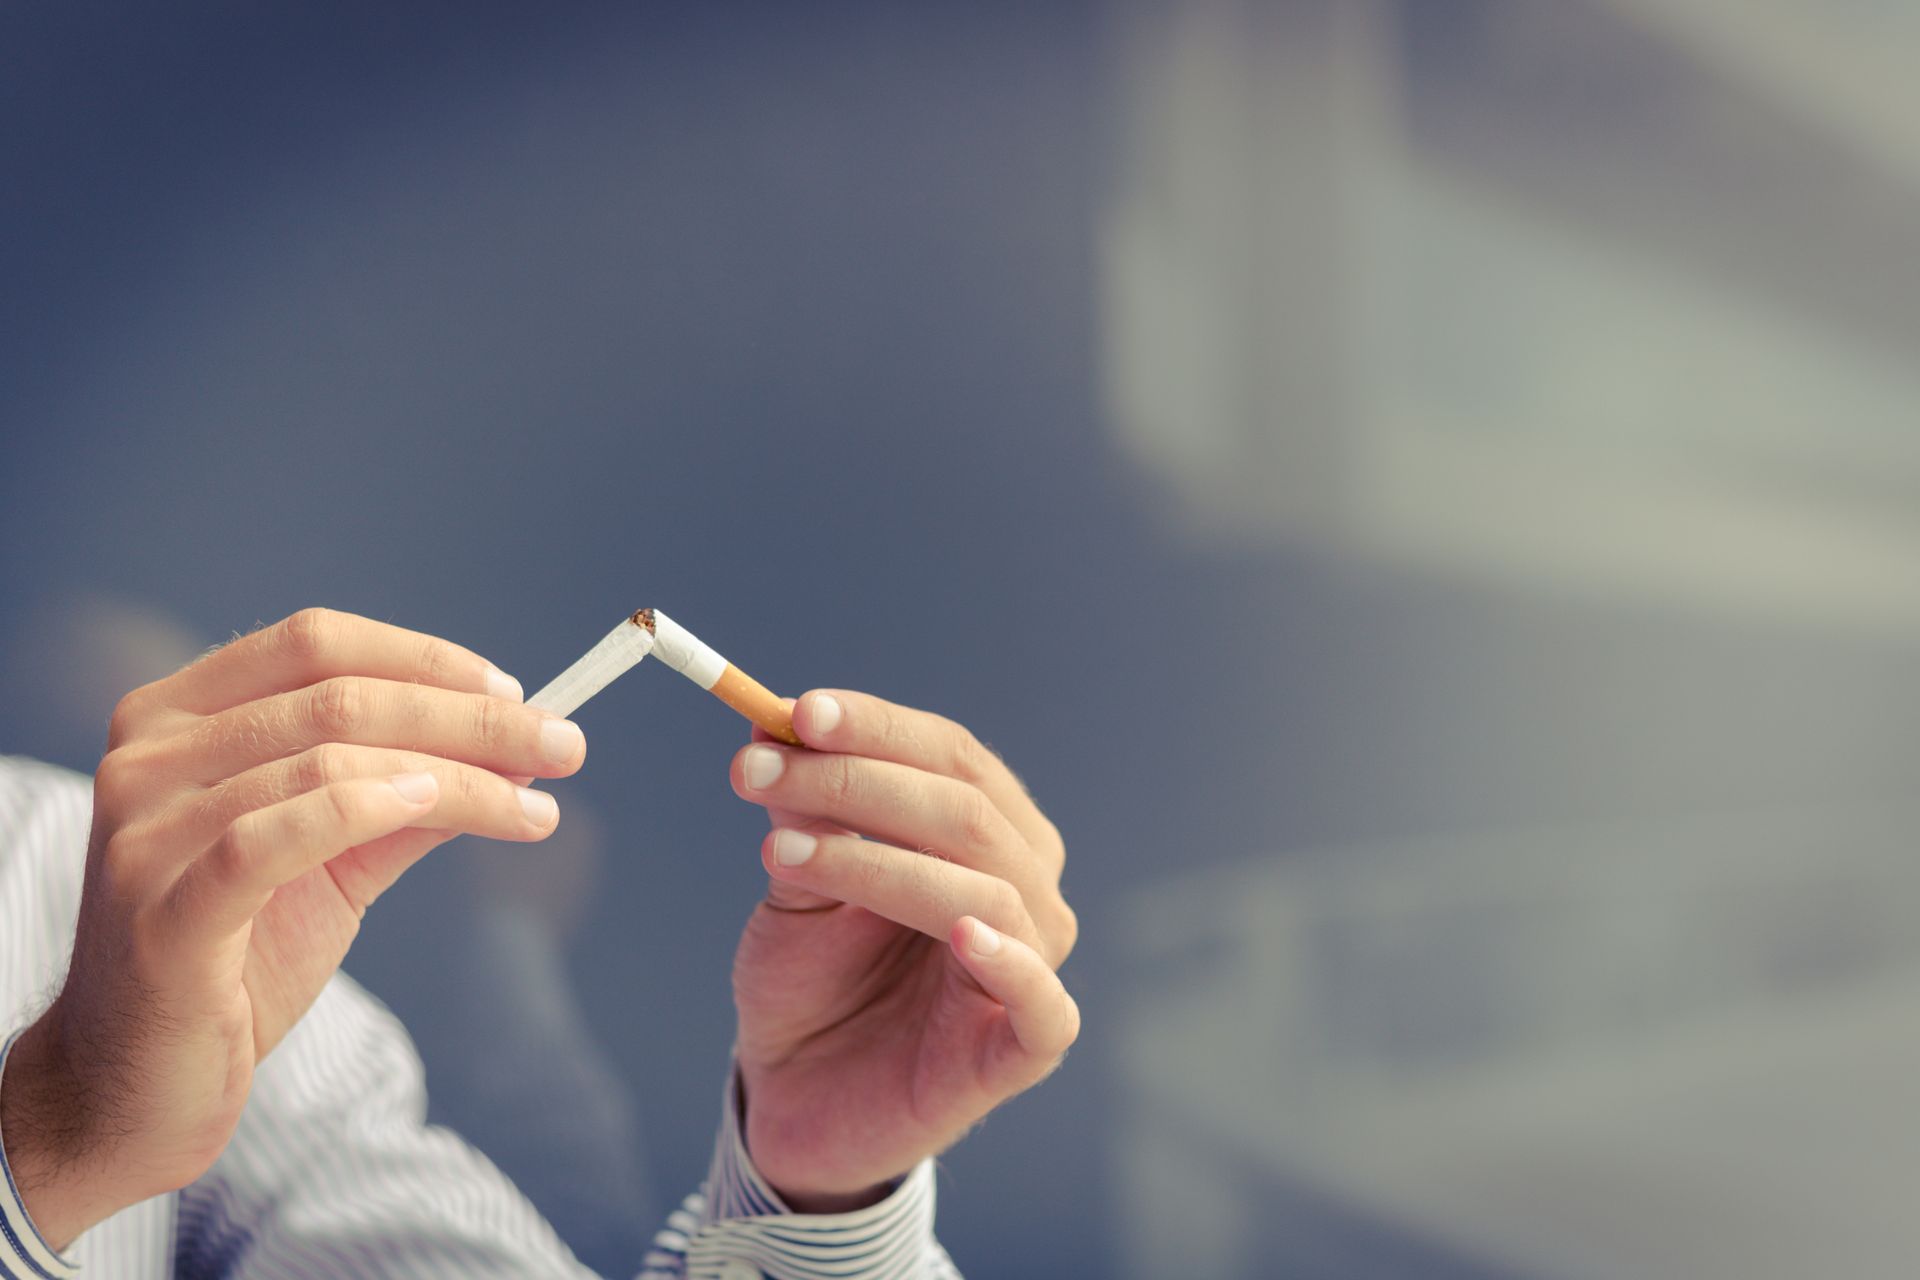 PARAR DE FUMAR: QUERER PARAR NÃO É O PRIMEIRO PASSO